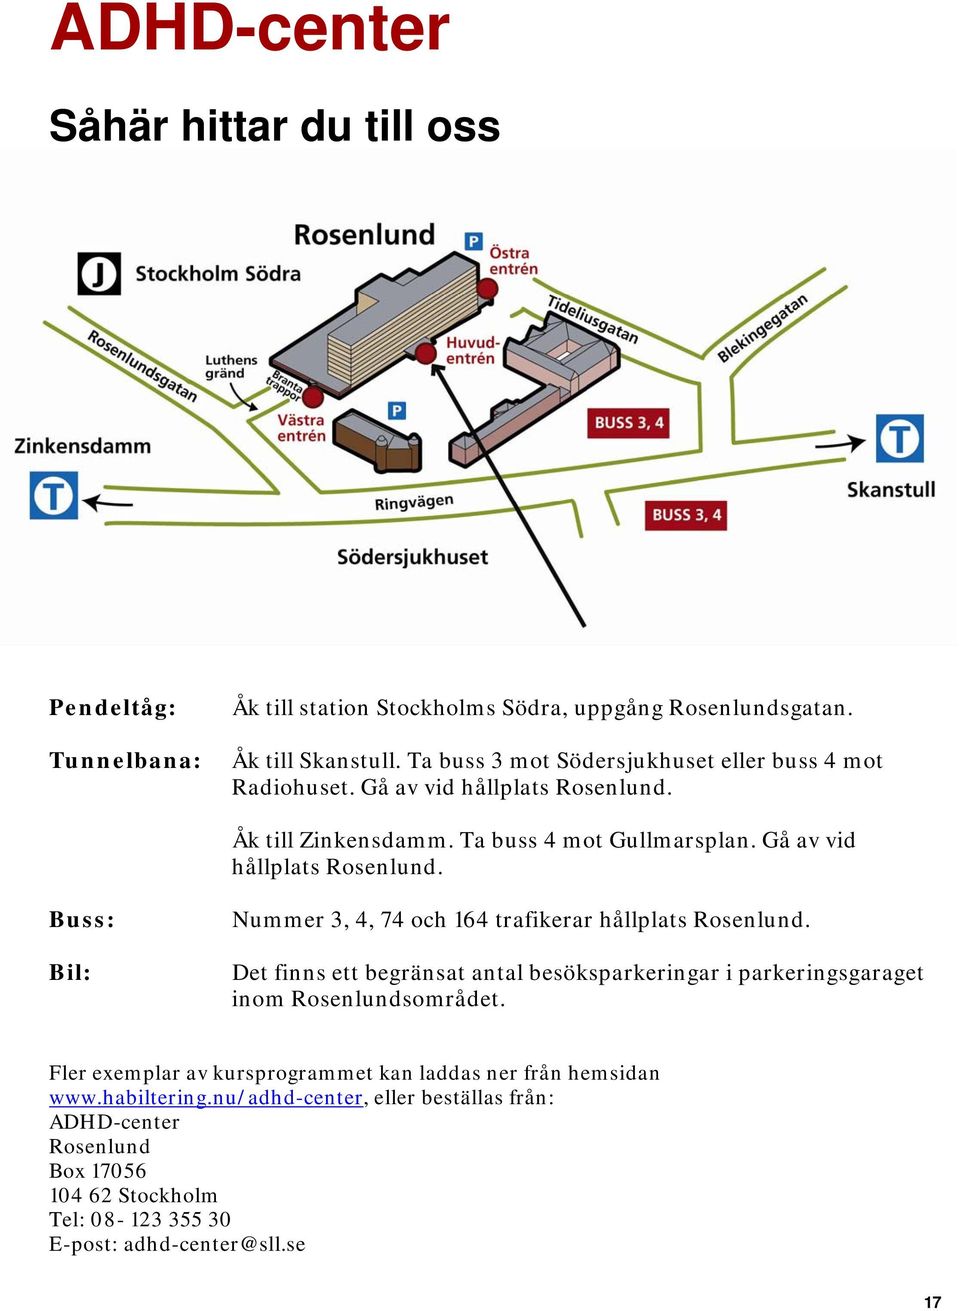 Det finns ett begränsat antal besöksparkeringar i parkeringsgaraget inom Rosenlundsområdet. Fler exemplar av kursprogrammet kan laddas ner från hemsidan www.habiltering.